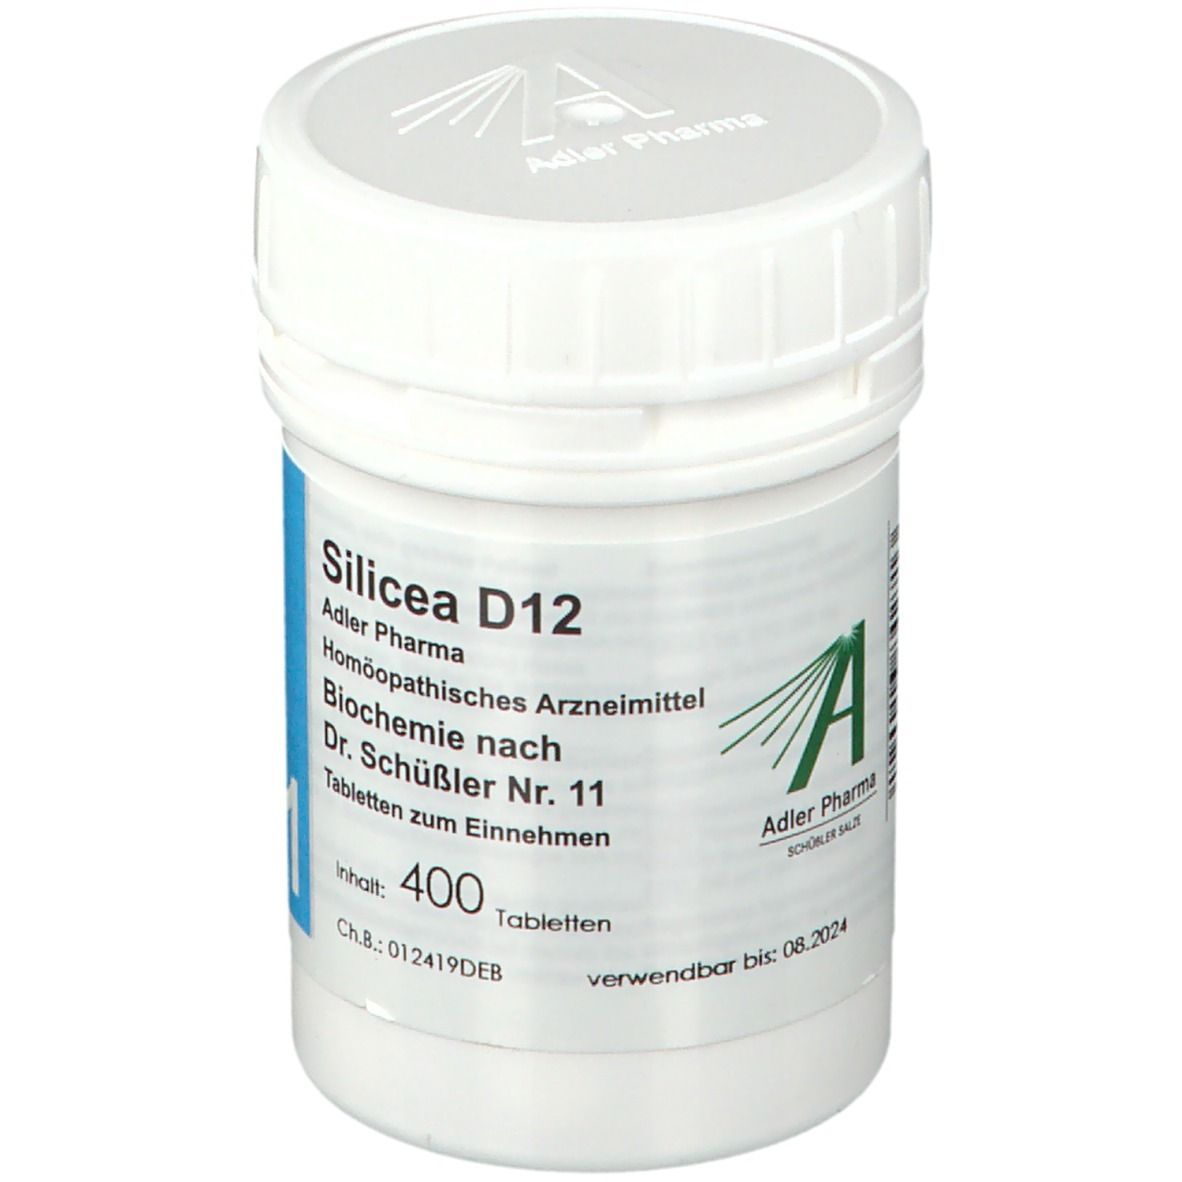 Adler Pharma Silicea D12 Biochemie nach Dr. Schüßler Nr. 11